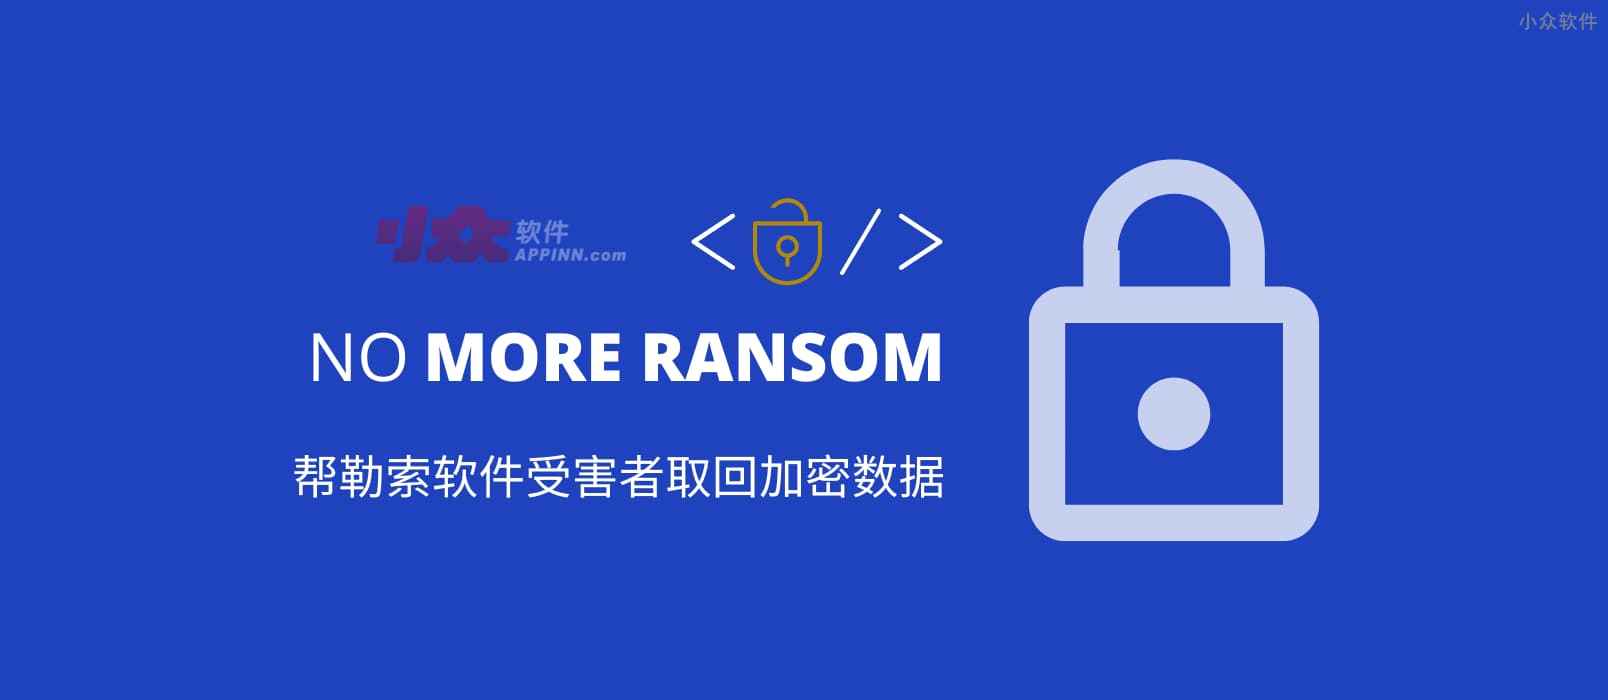 拒绝勒索软件 No More Ransom：帮助受害者从 172 种勒索软件中取回加密数据